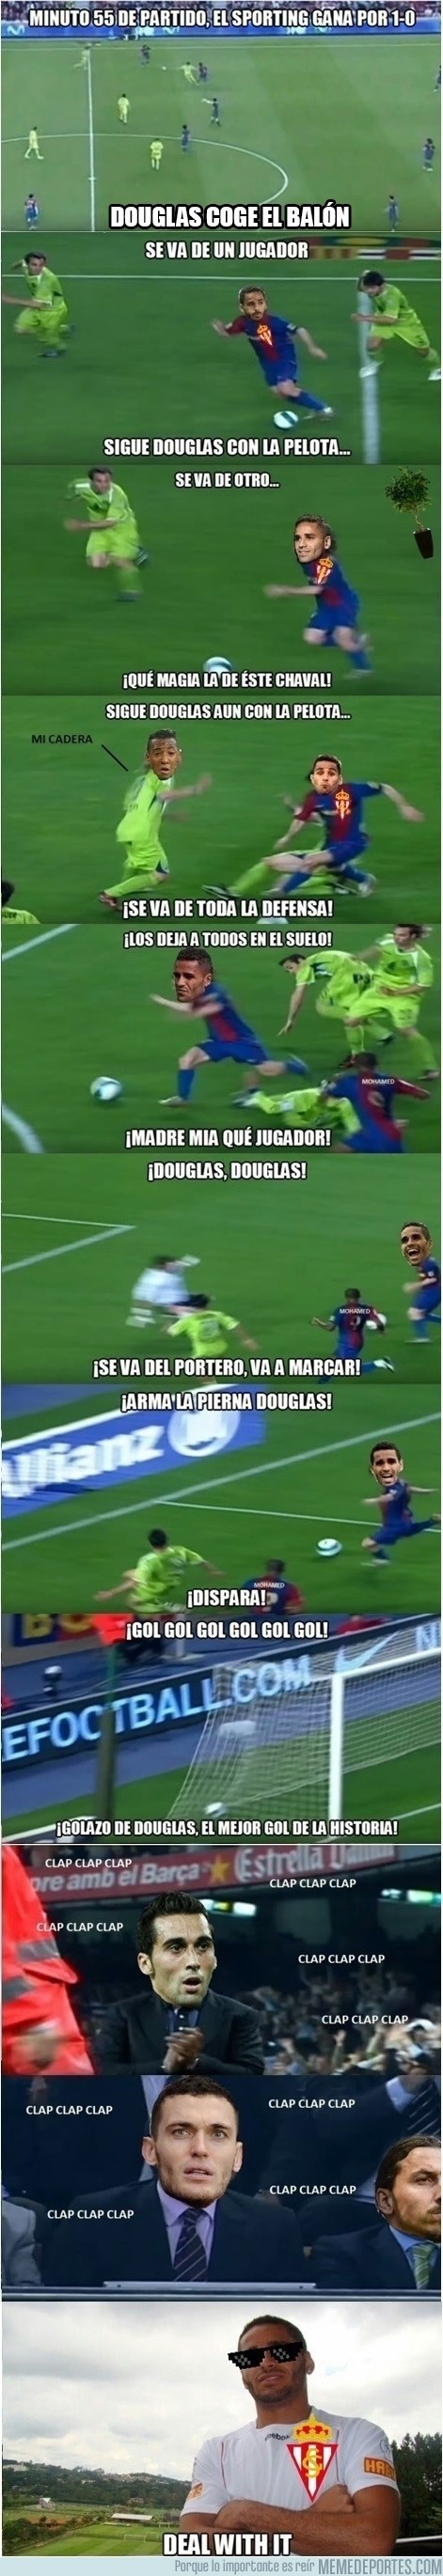 935481 - REMEMBER: El primer gol de Douglas en España fotograma a fotograma